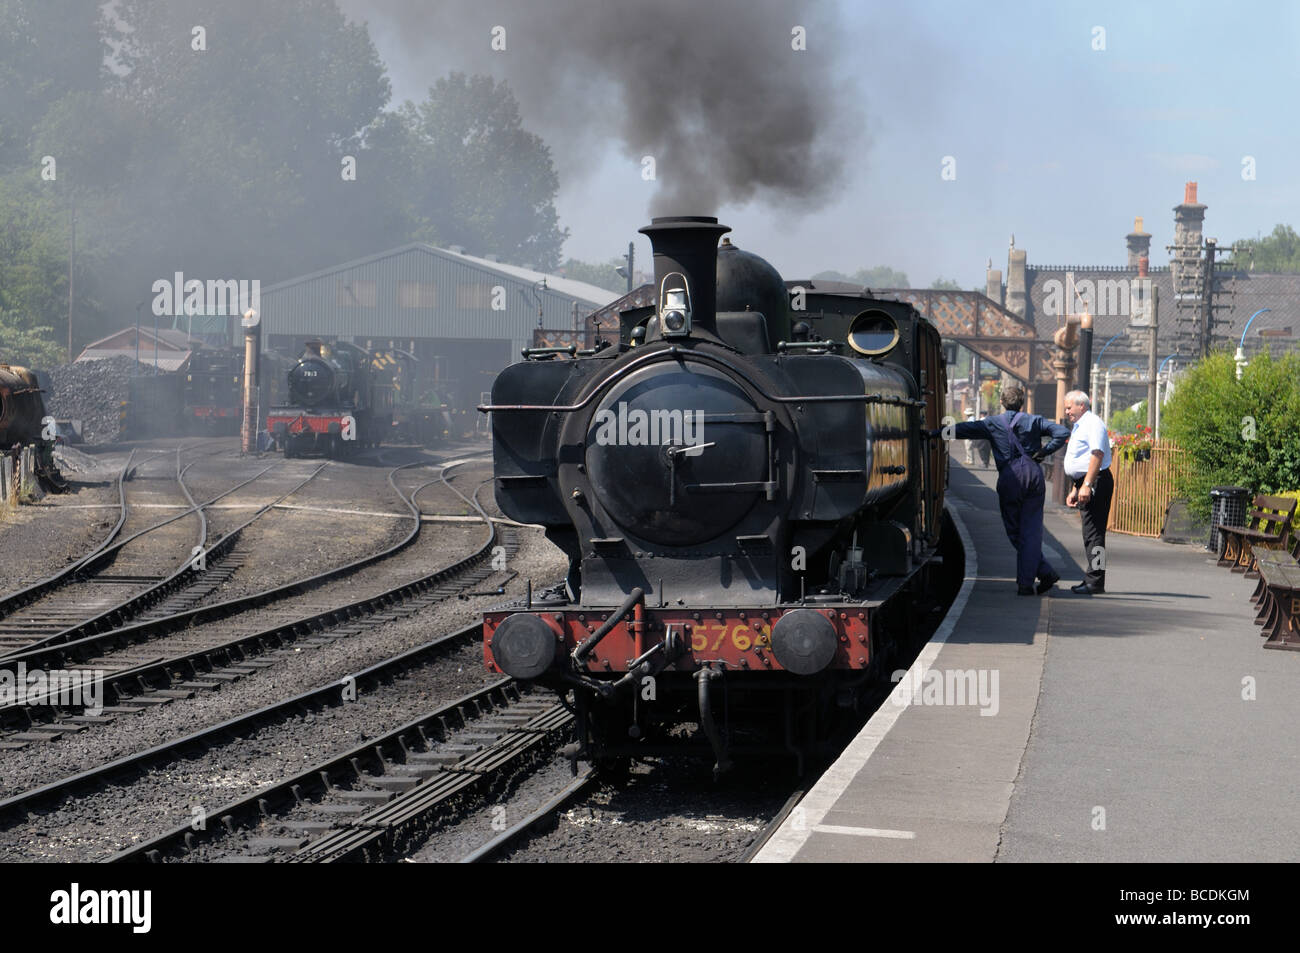 Quitter la station de train à vapeur sur la Bridgnorth Severn Valley Railway, Shropshire Banque D'Images